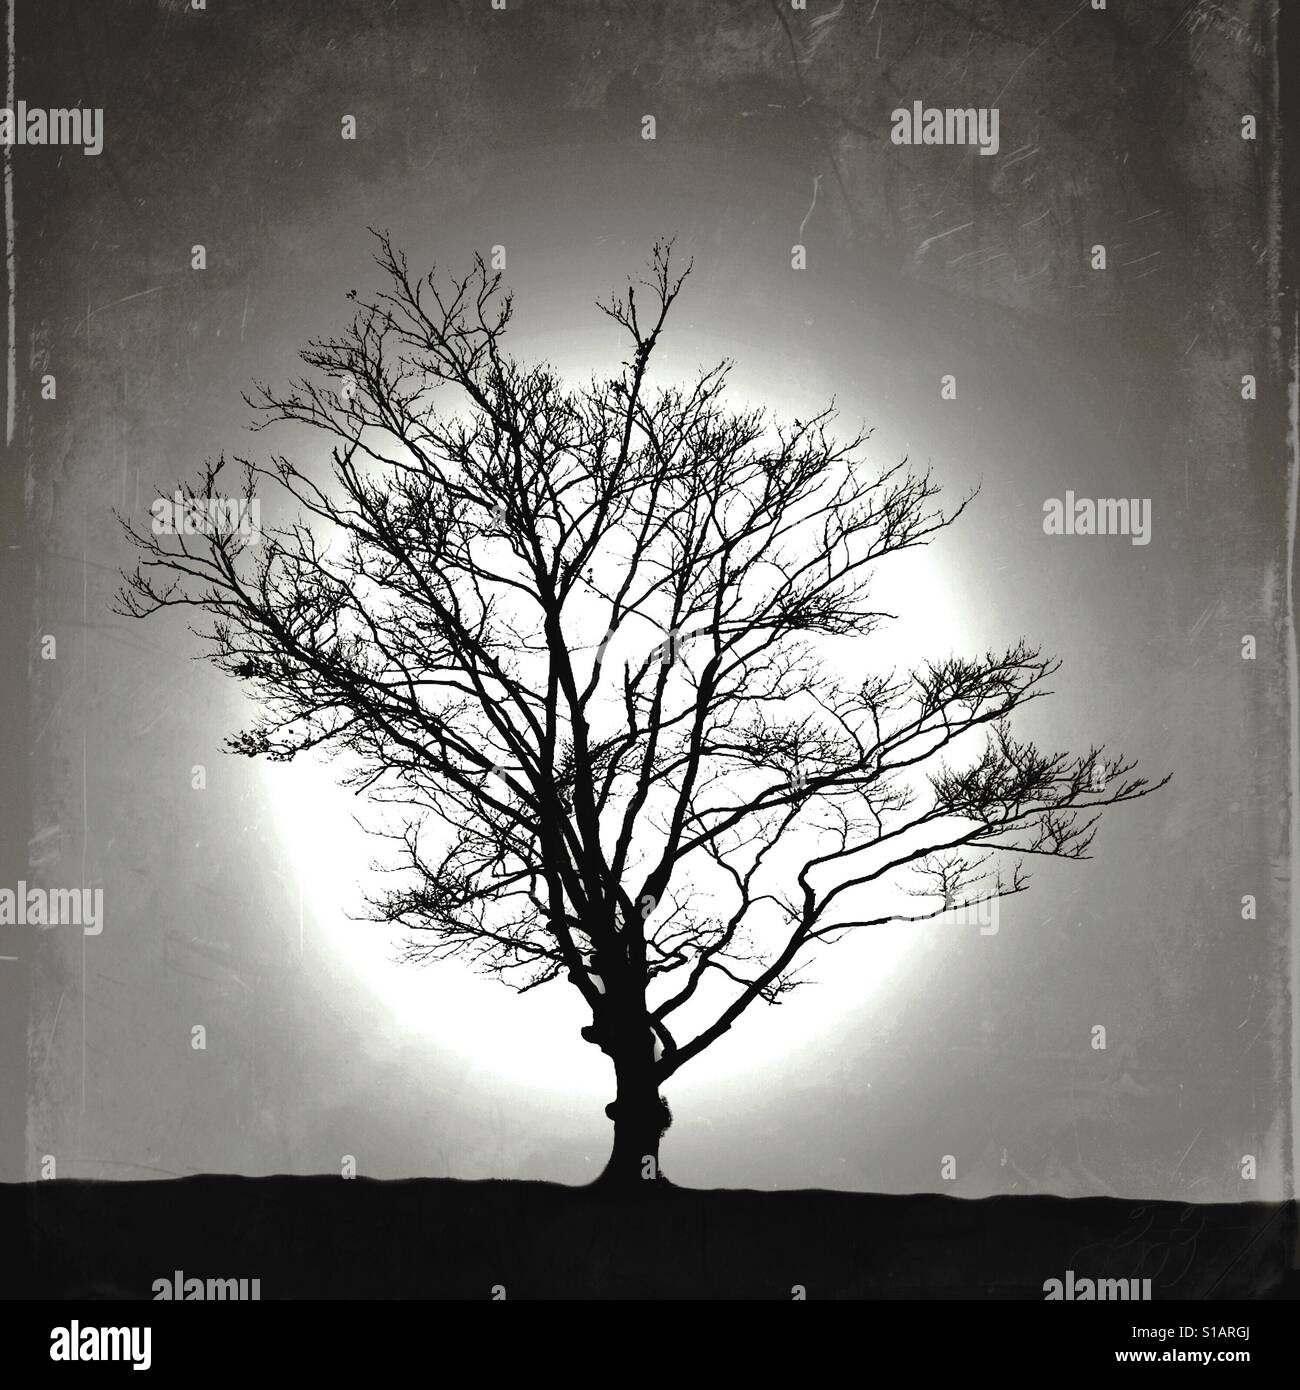 Eine einsamer Baum Silhouette zeichnet sich gegen einen strukturierten schwarzen und weißen Hintergrund. Stockfoto